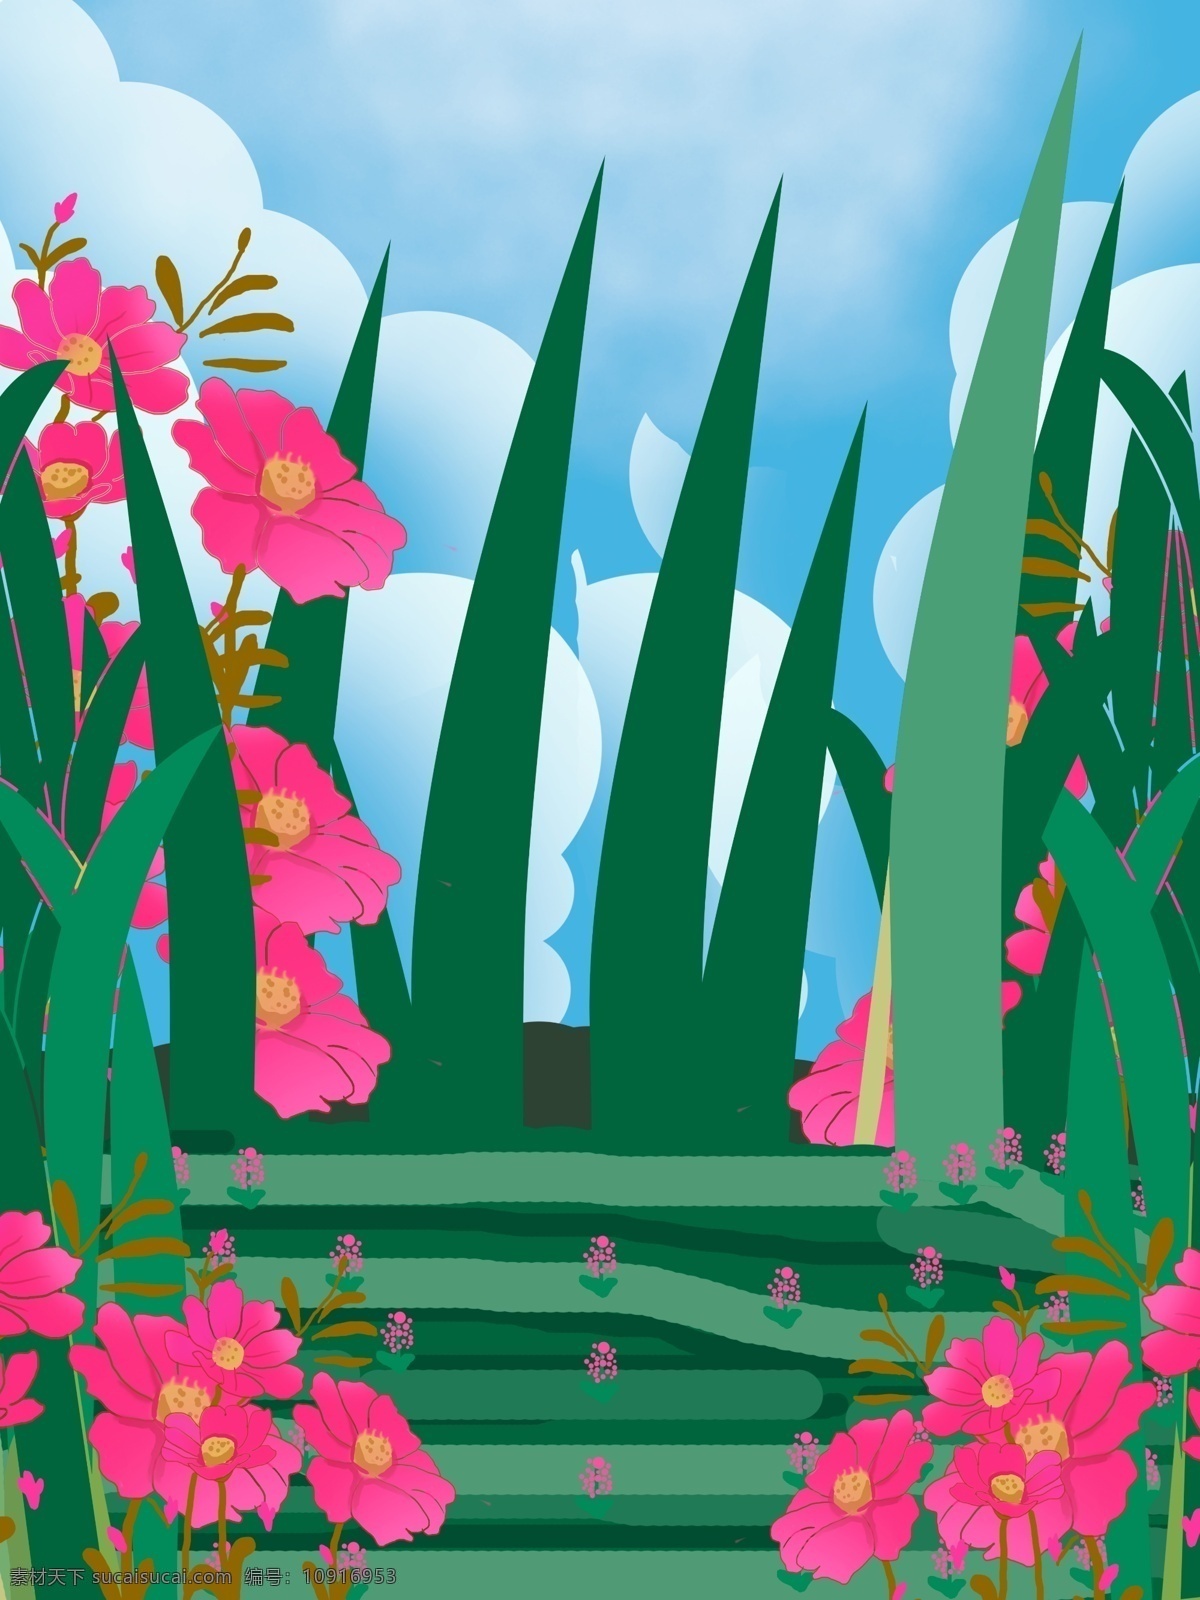 春天 唯美 小 清晰 植物 花卉 背景 广告背景 背景素材 植物背景 psd背景 花卉背景 通用背景 卡通背景